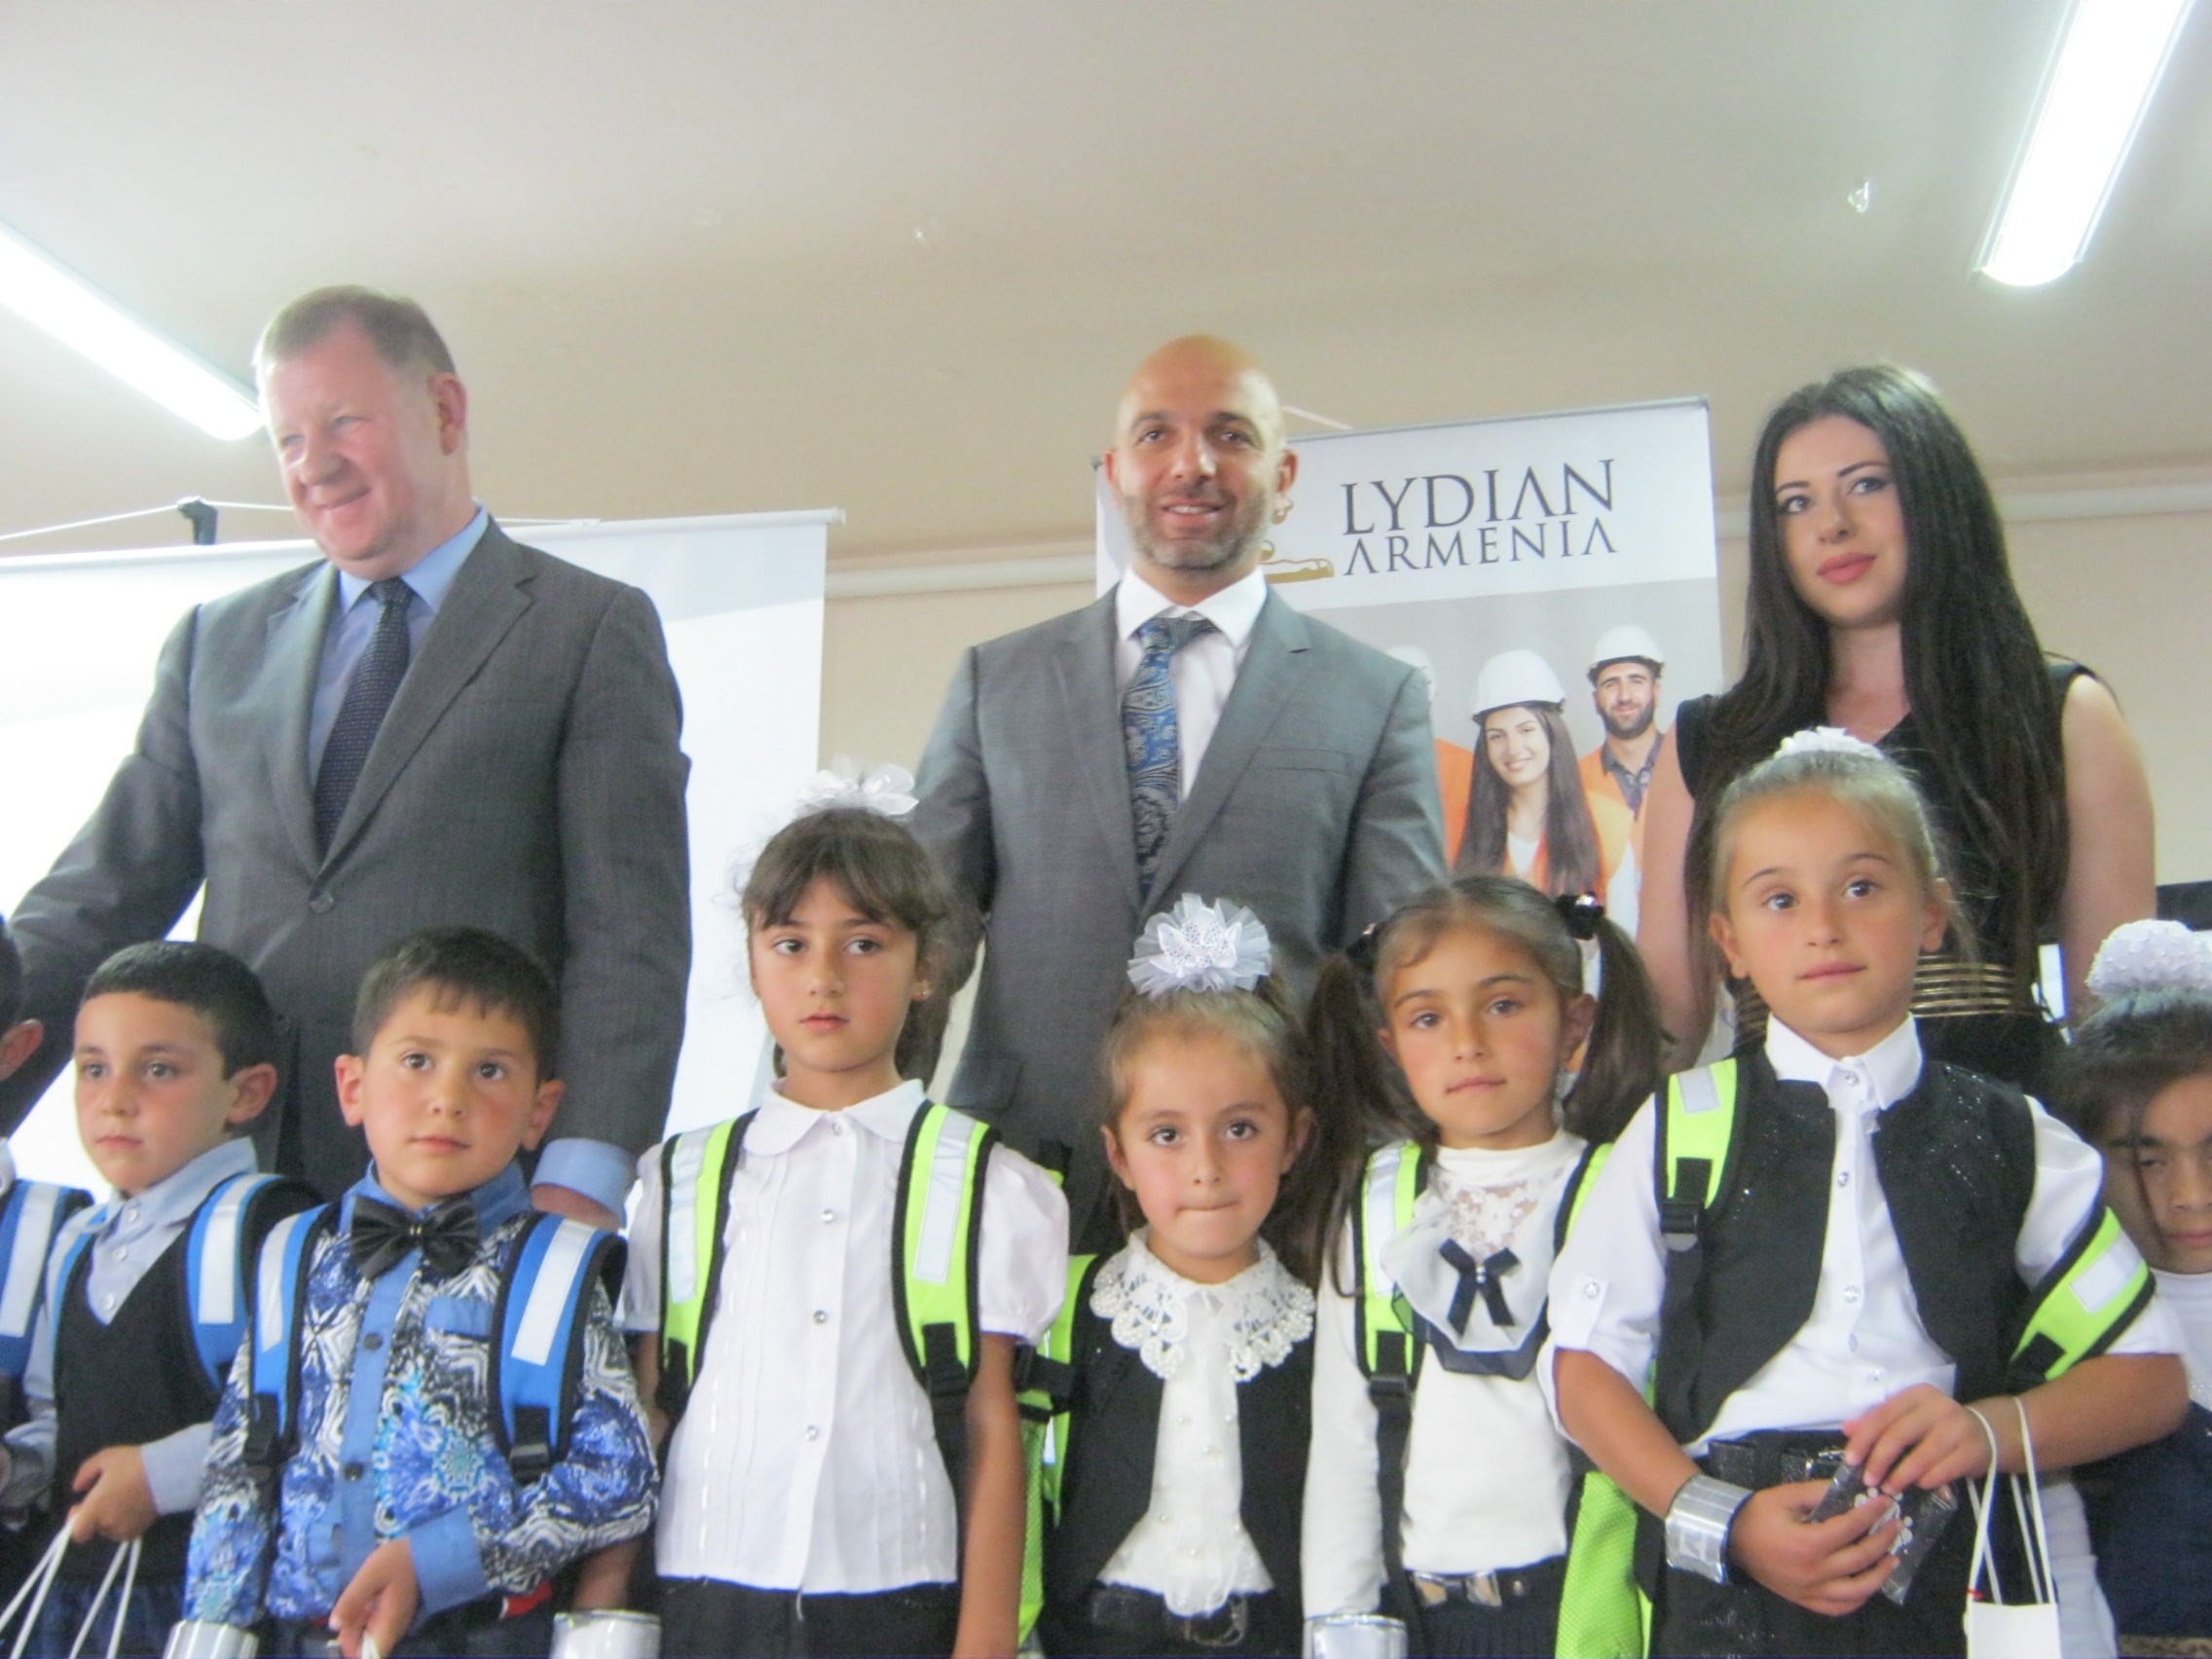 Lydian Armenia-ն ֆինանսավորում է համայքներում  երեխաների ճանապարհային անվտանգության ծրագիրը